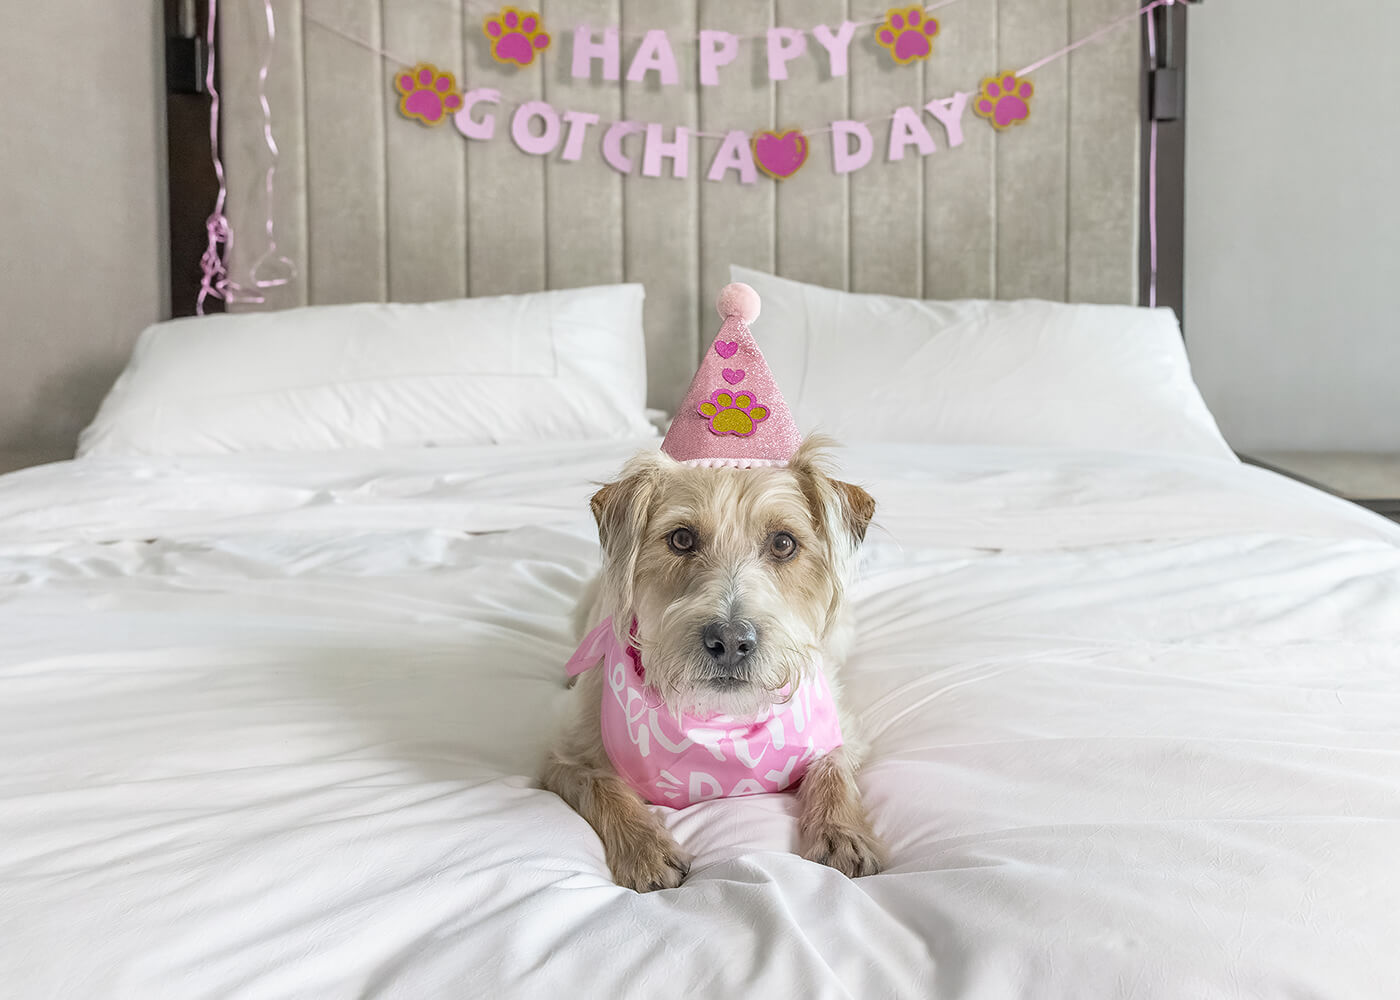 dog celebrates gotcha day in Toronto hotel